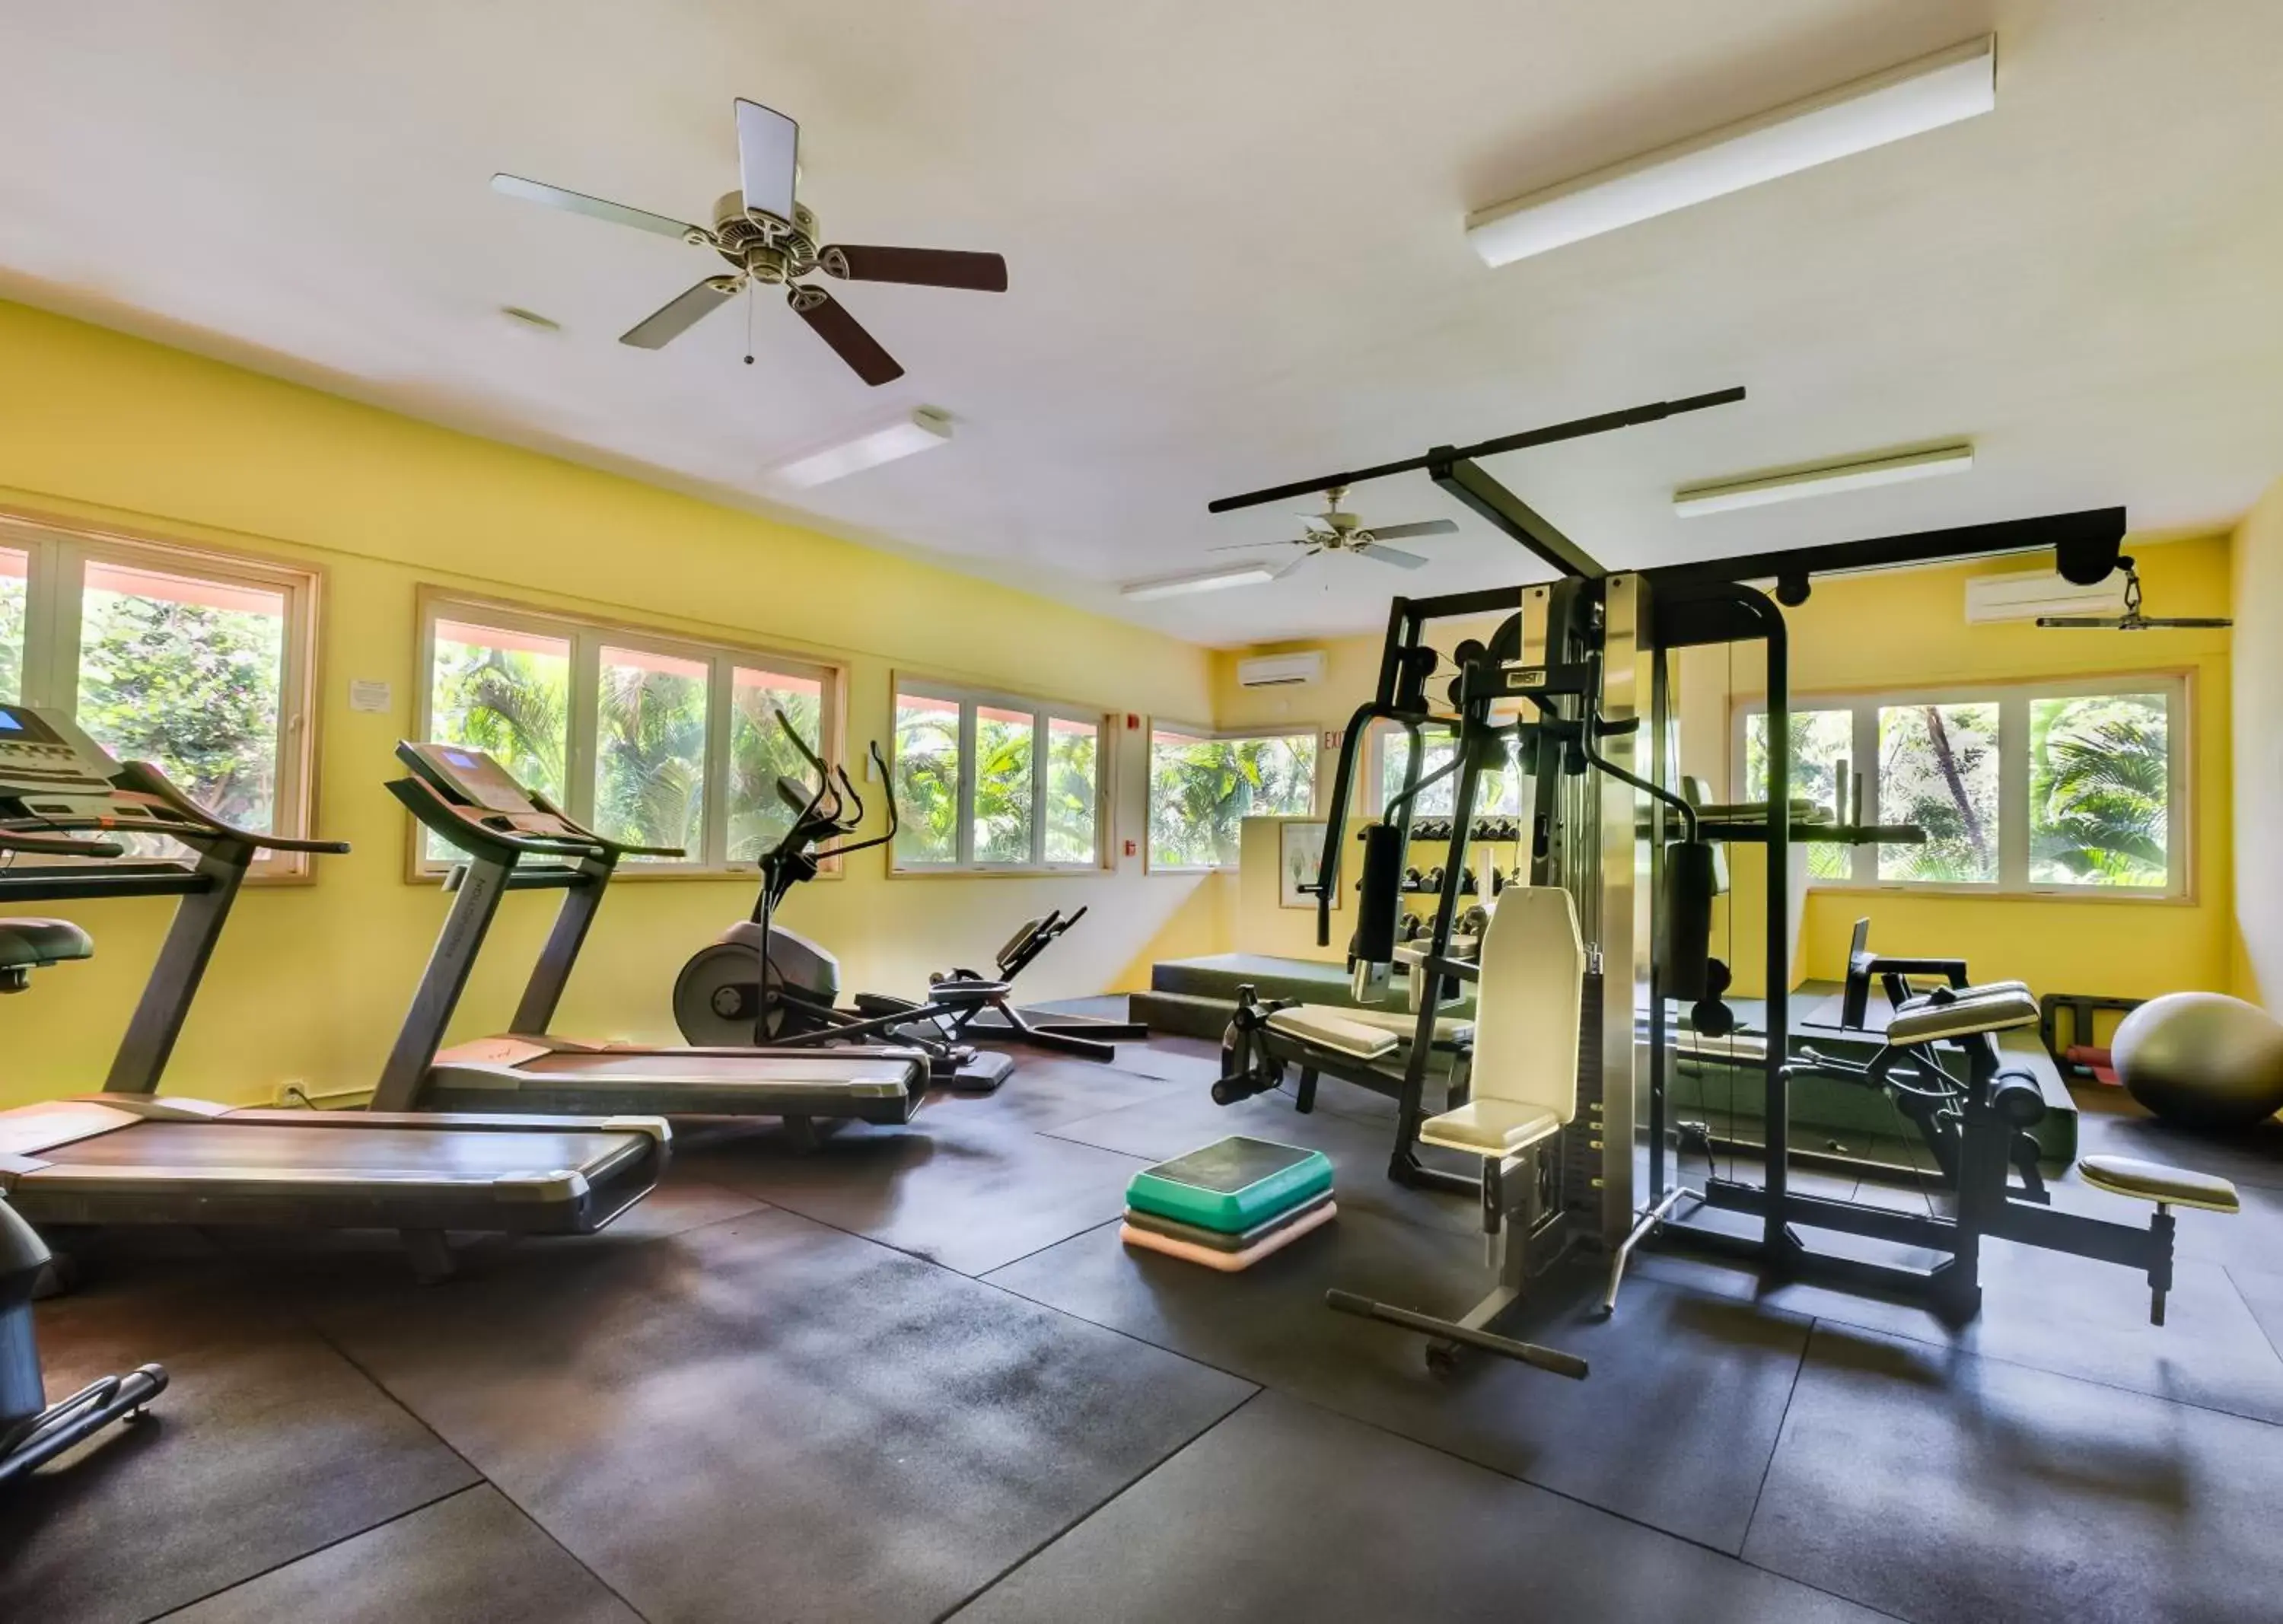 Fitness centre/facilities, Fitness Center/Facilities in Kahana Falls Resort